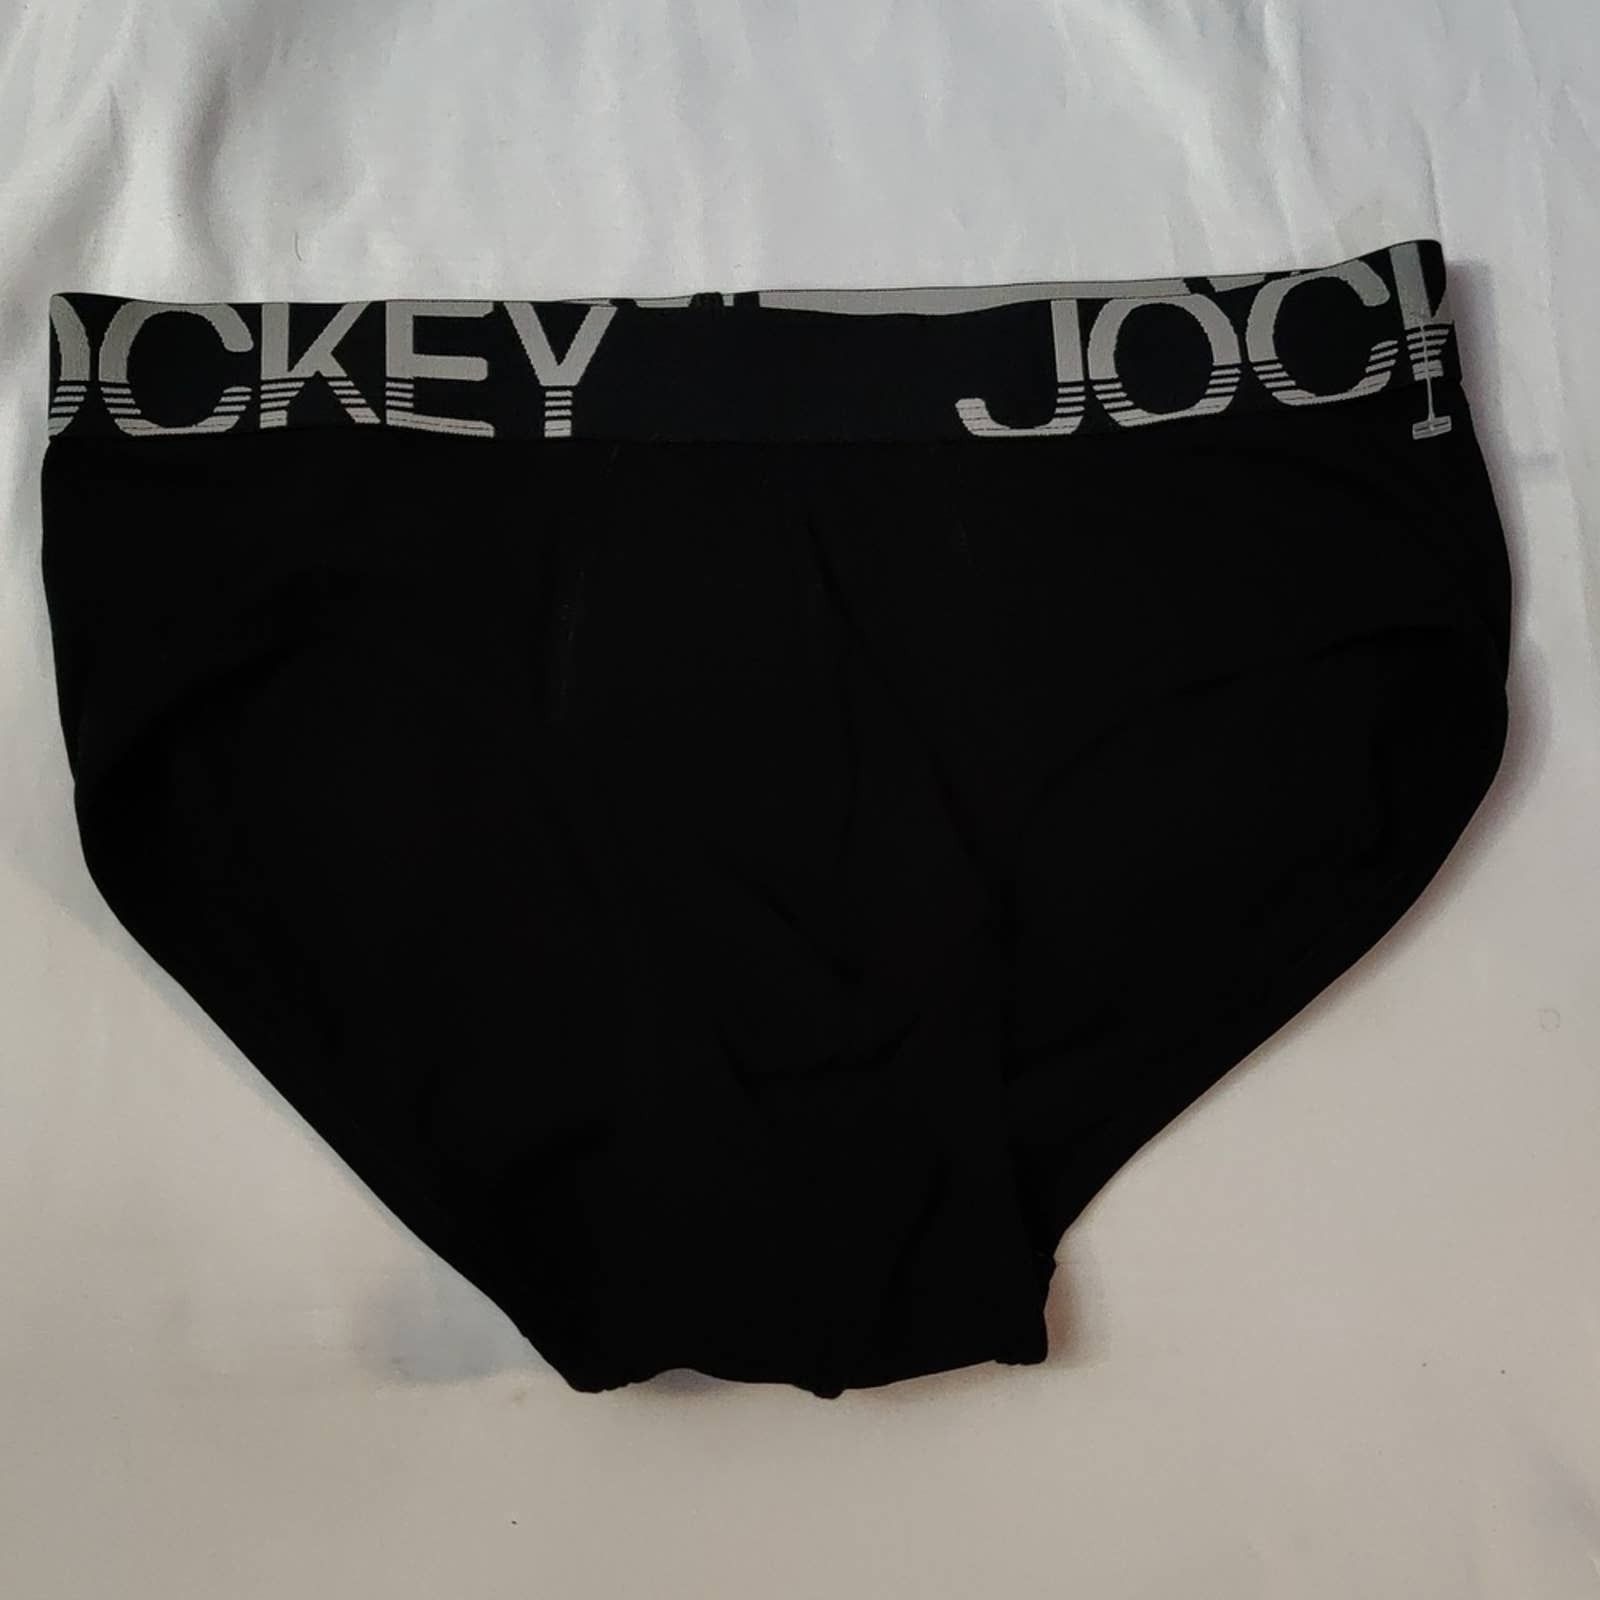 Jockey New 90s Jockey Stretch Pouch No Fly Brief Underwear White